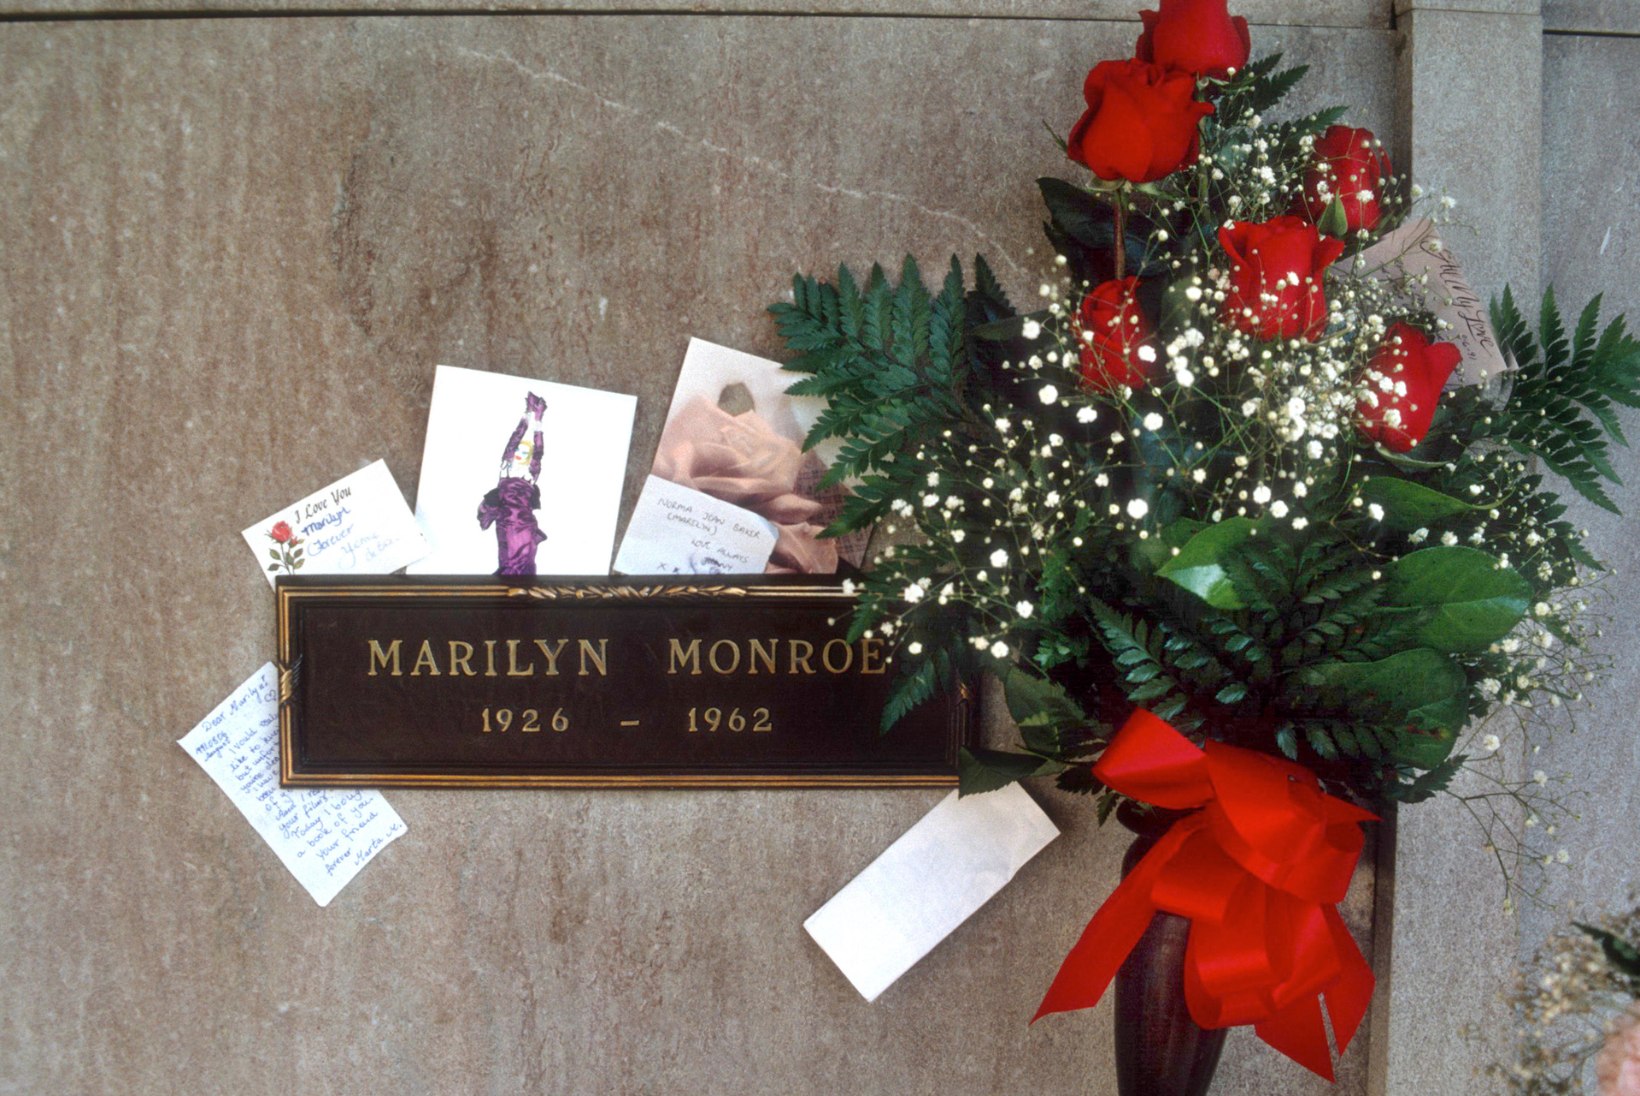 55 AASTAT MARILYN MONROE SURMAST: seksiikoon oli alamakstud ja surma eel võlgades